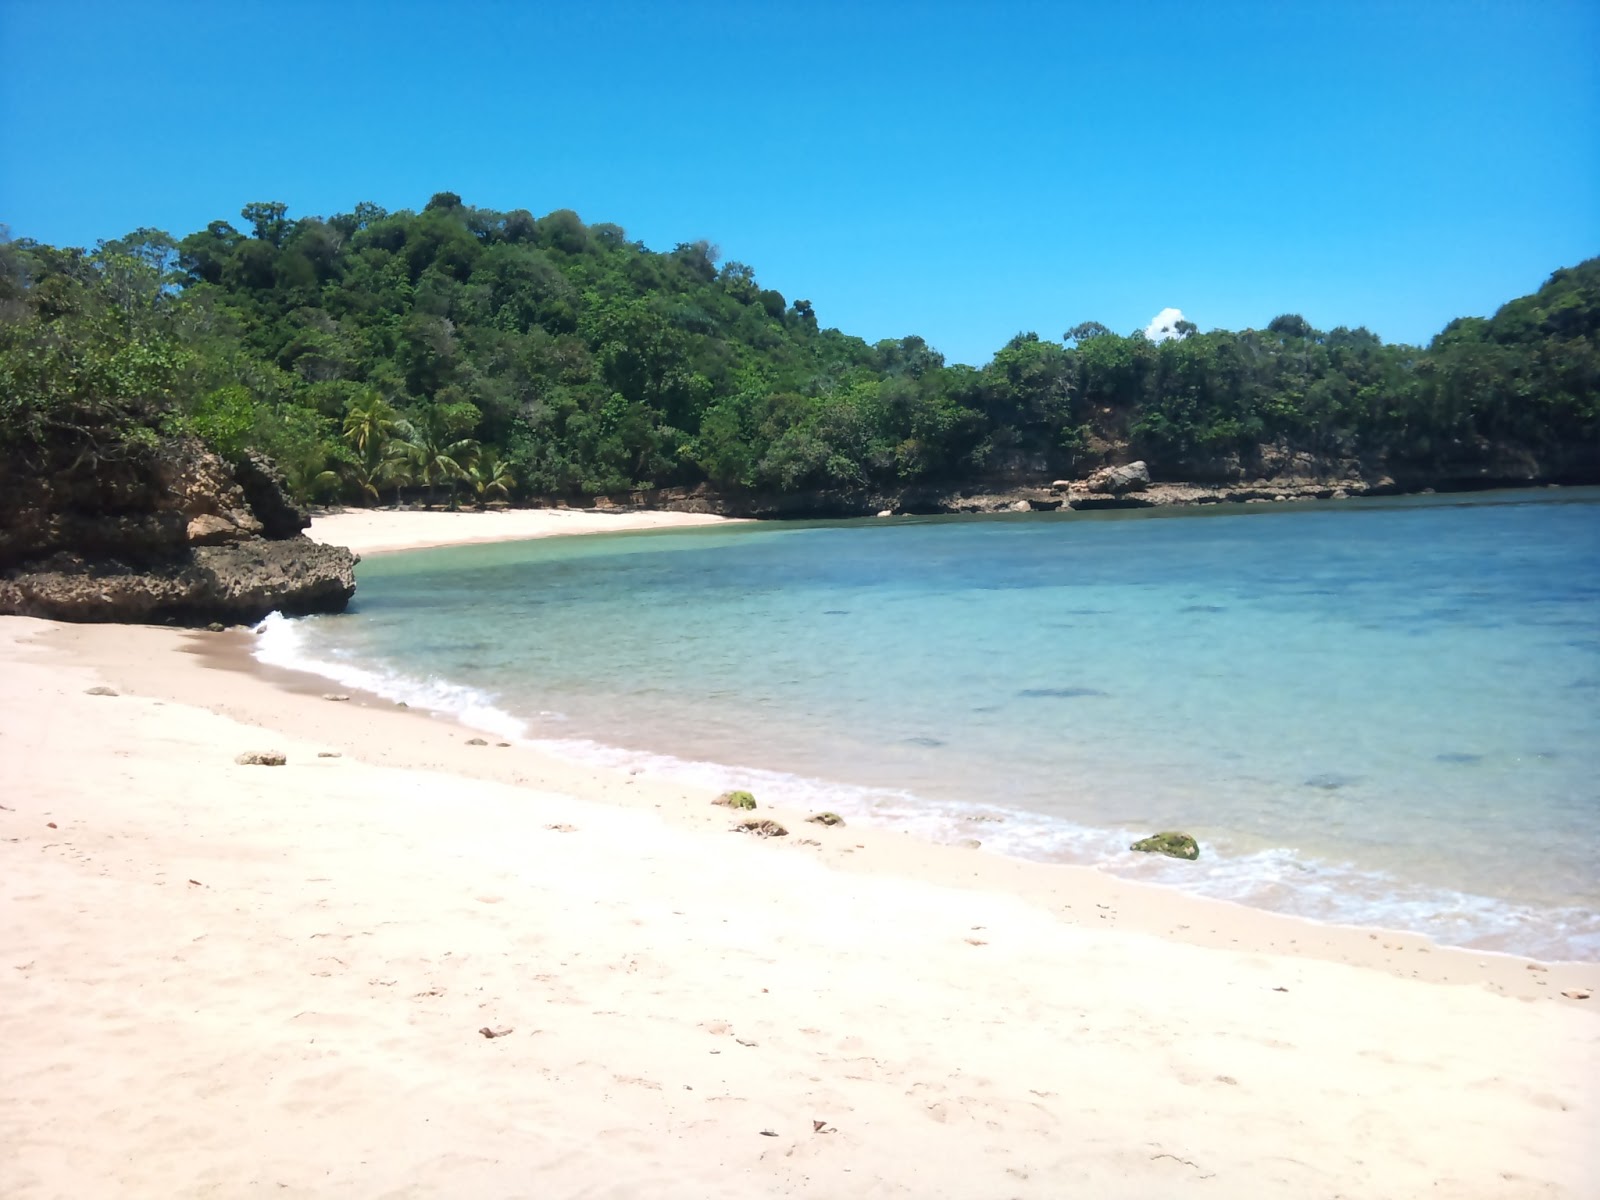 Pantai Pasir Panjang